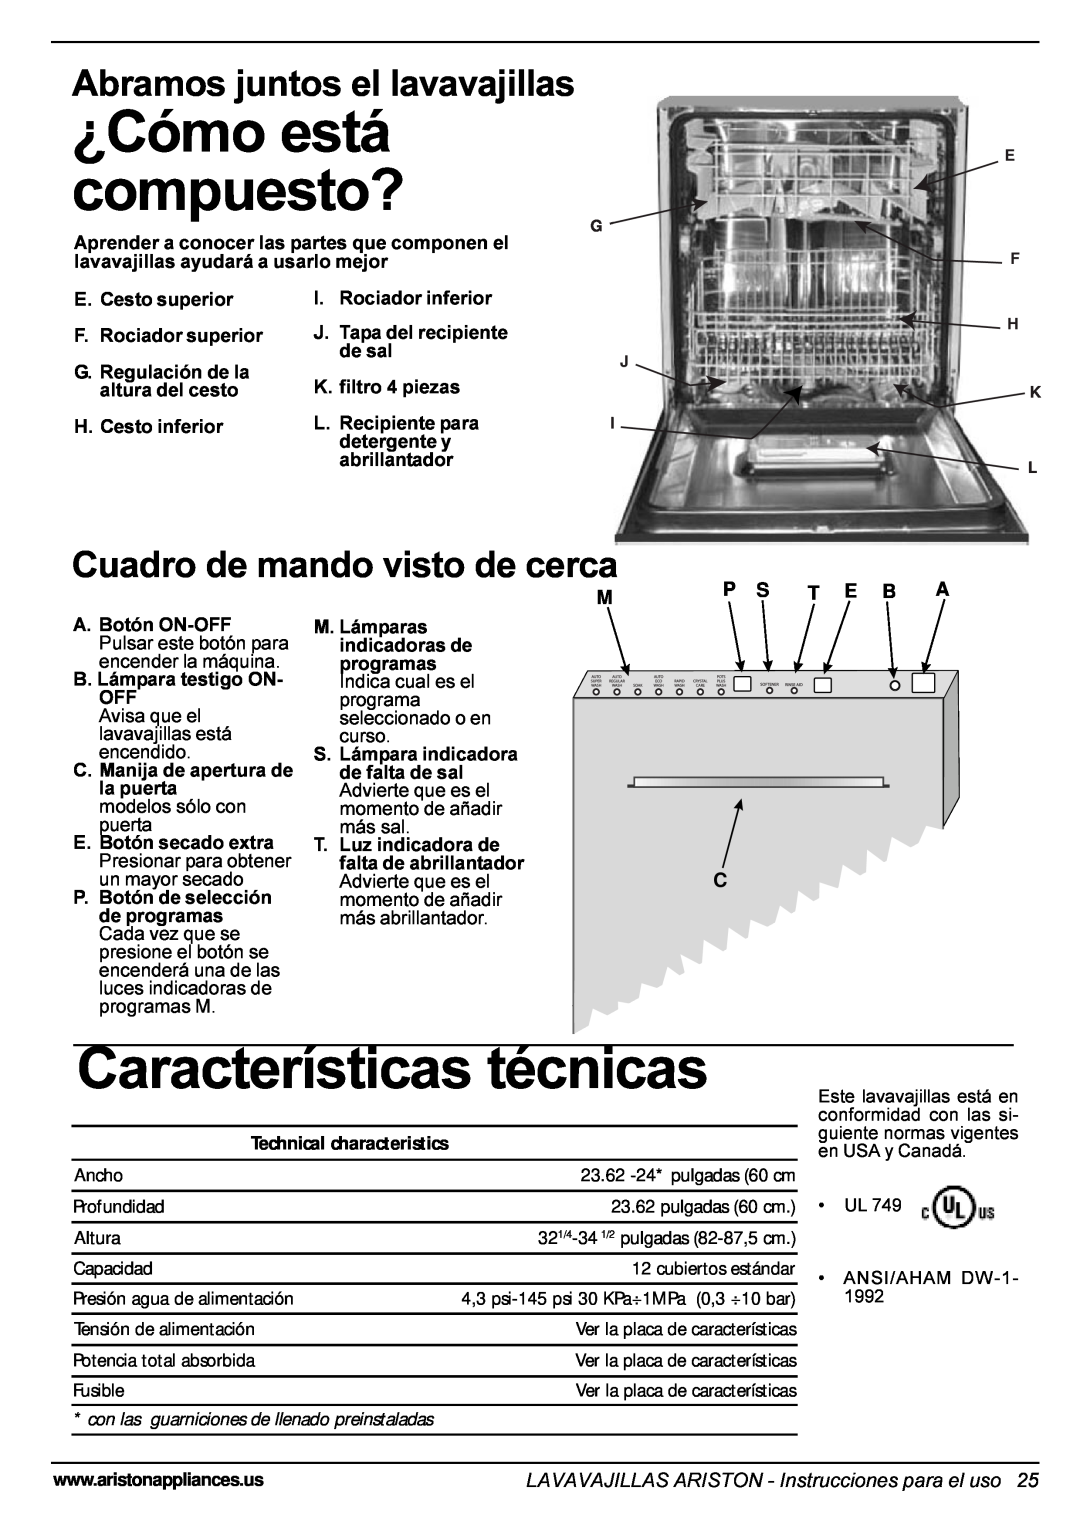 Ariston LI 670 B-S-W manual ¿Cómo está compuesto?, Características técnicas, Abramos juntos el lavavajillas, P S T E B A C 